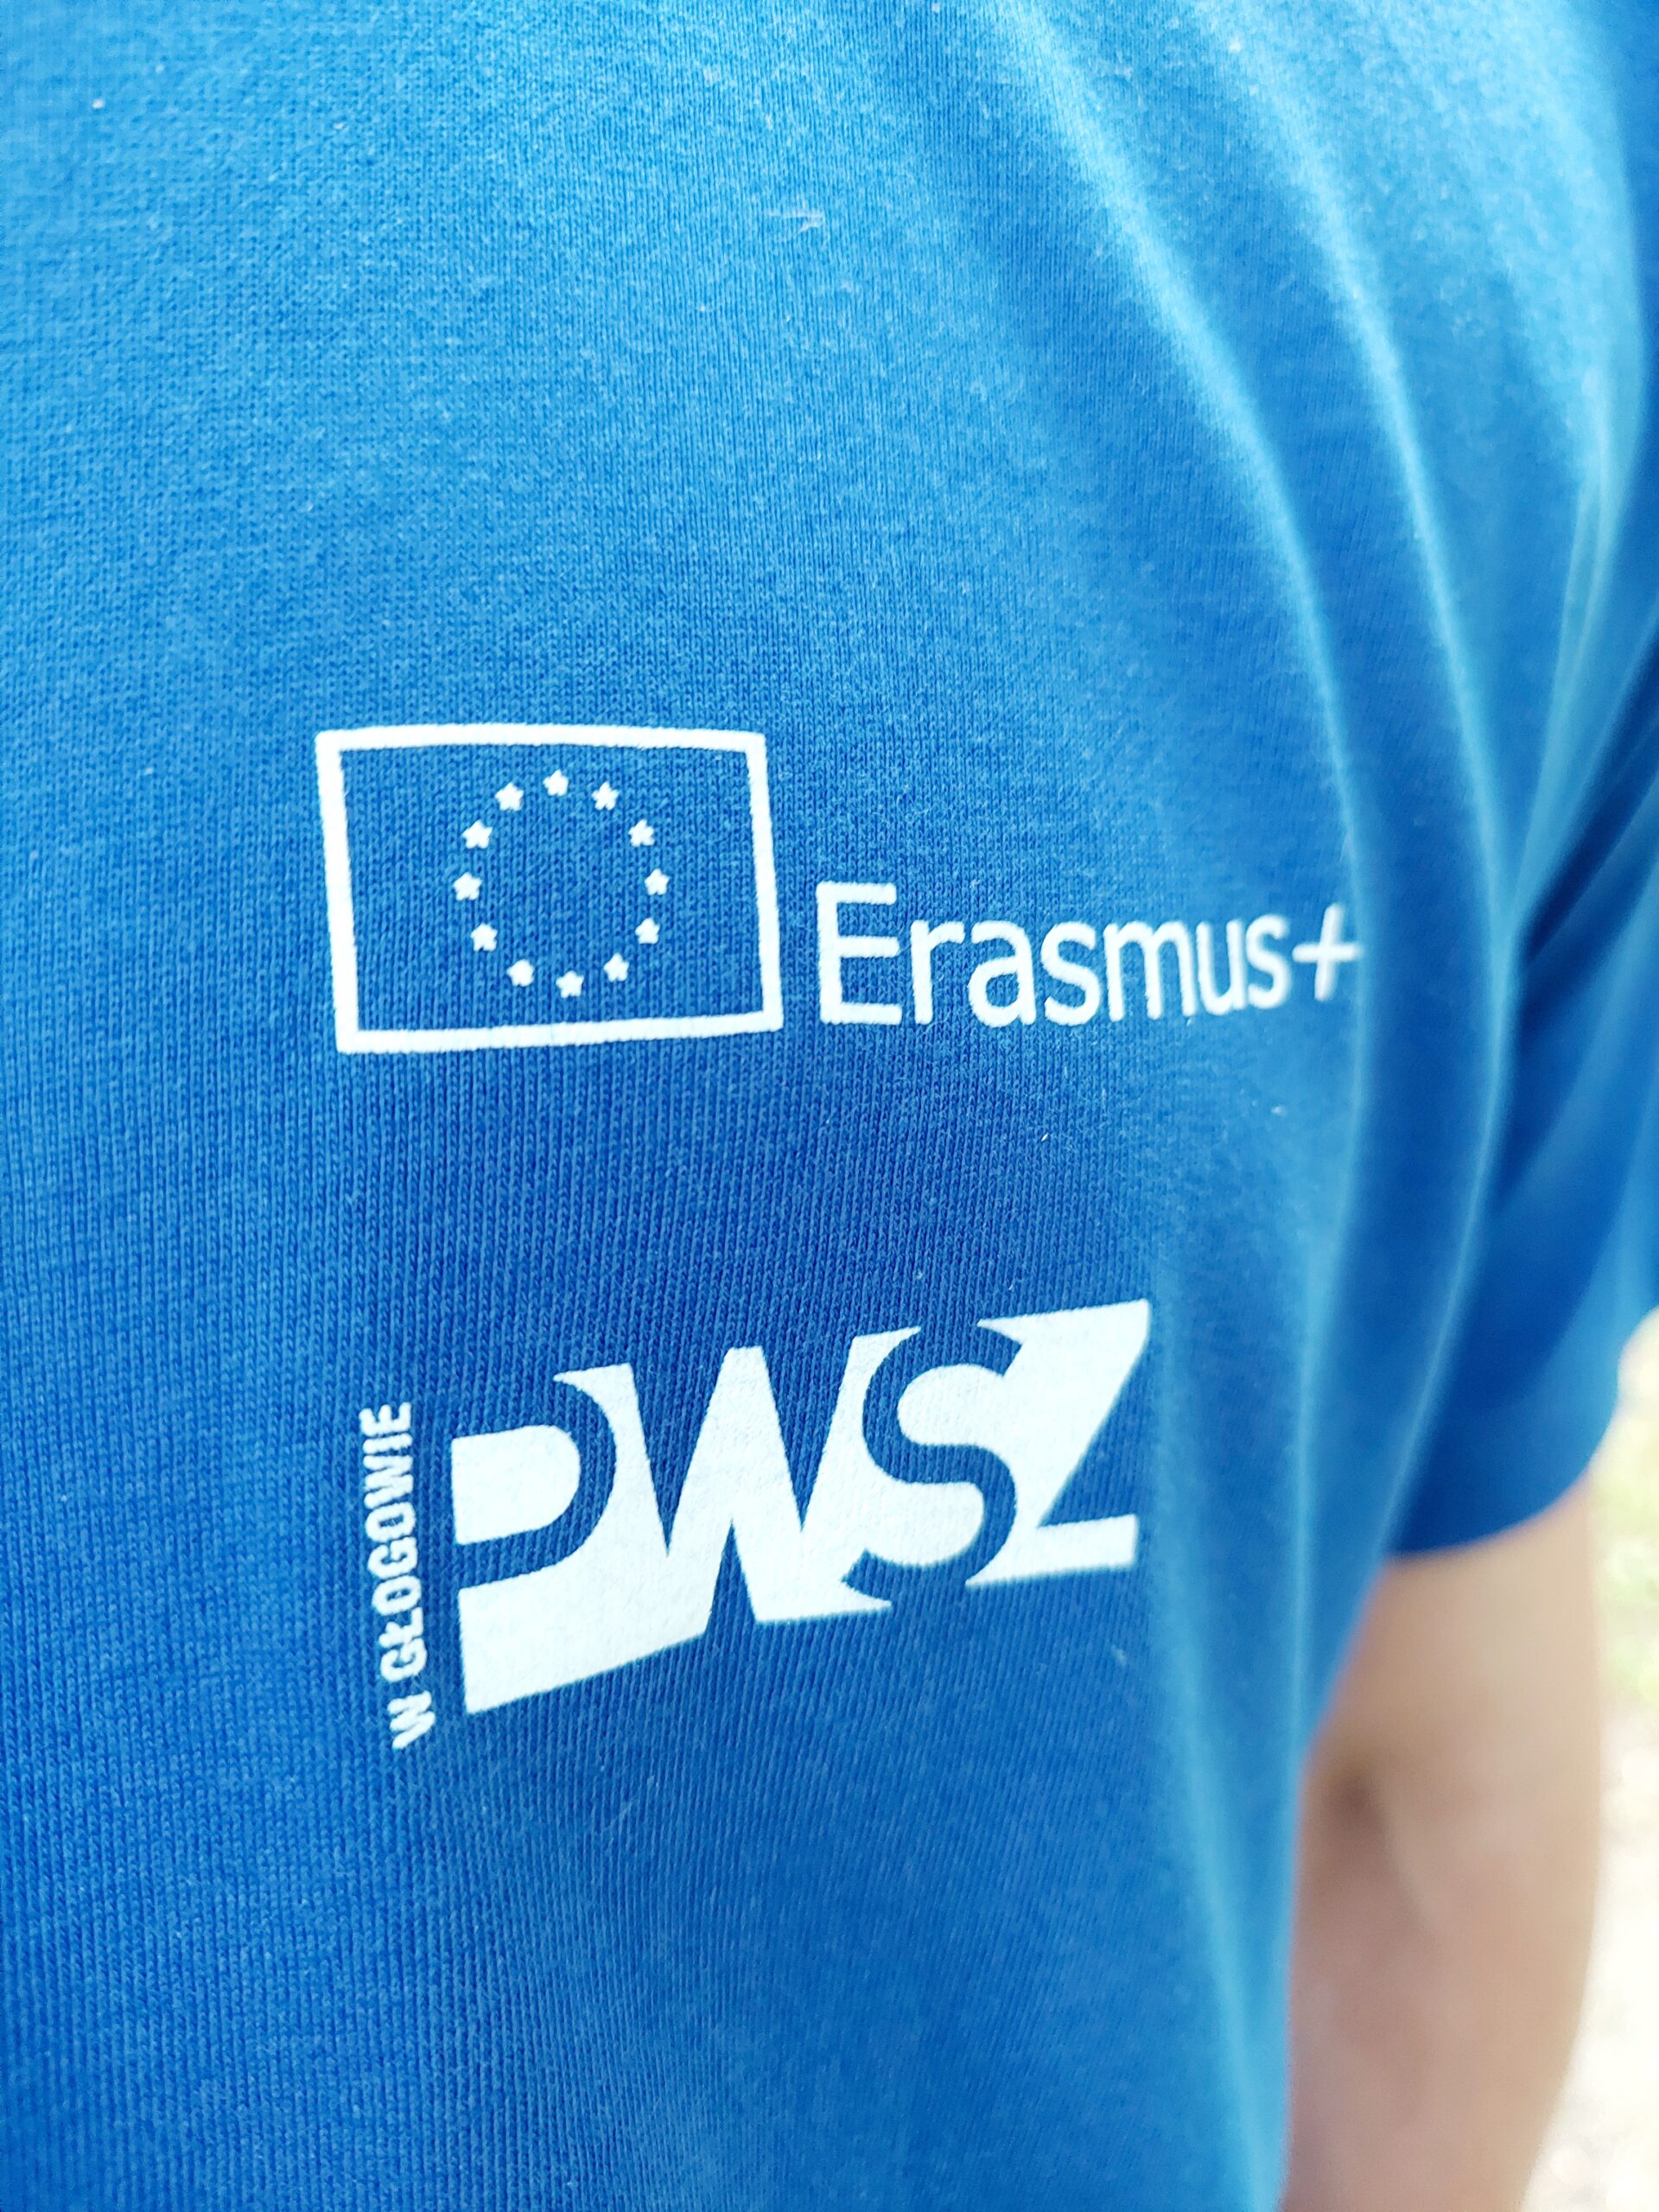 promocja Erasmus+